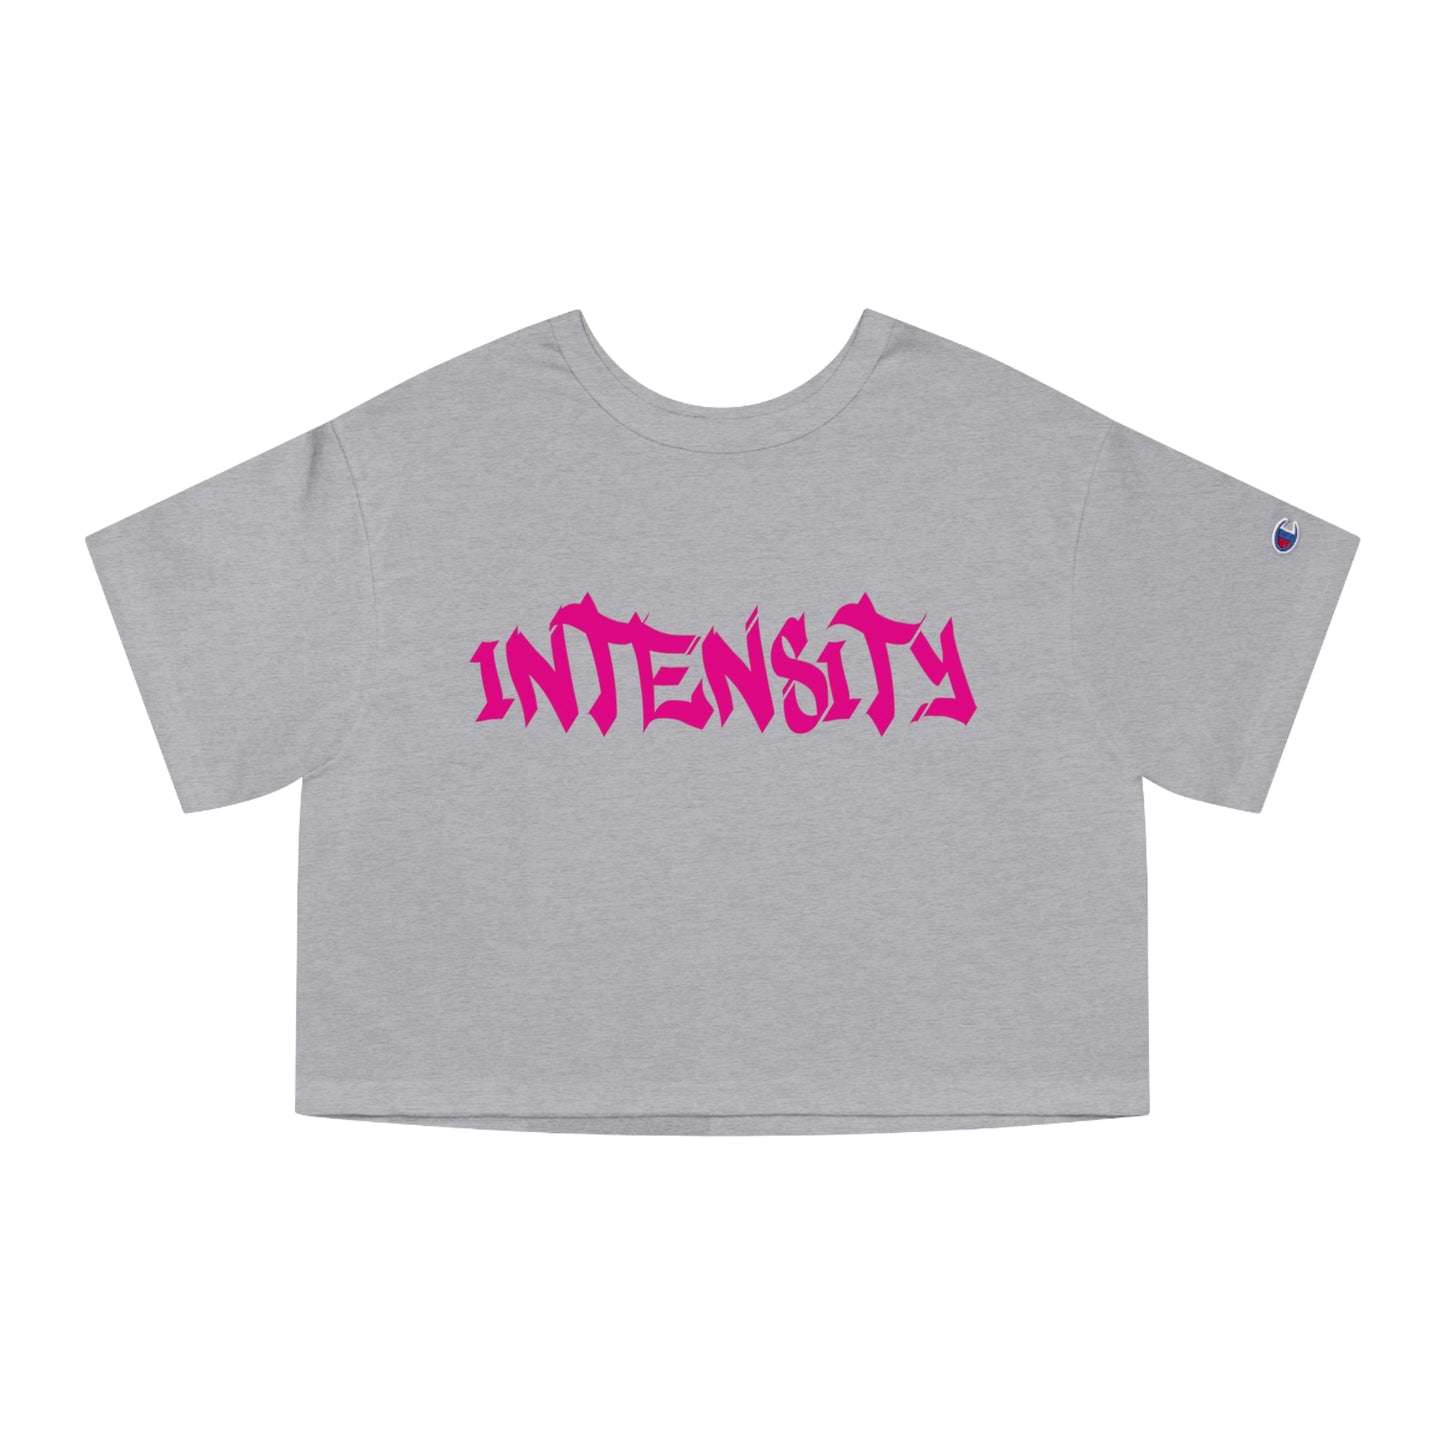 Women's "INTENSITY" Crop Top T-Shirt Hot Pink Logo